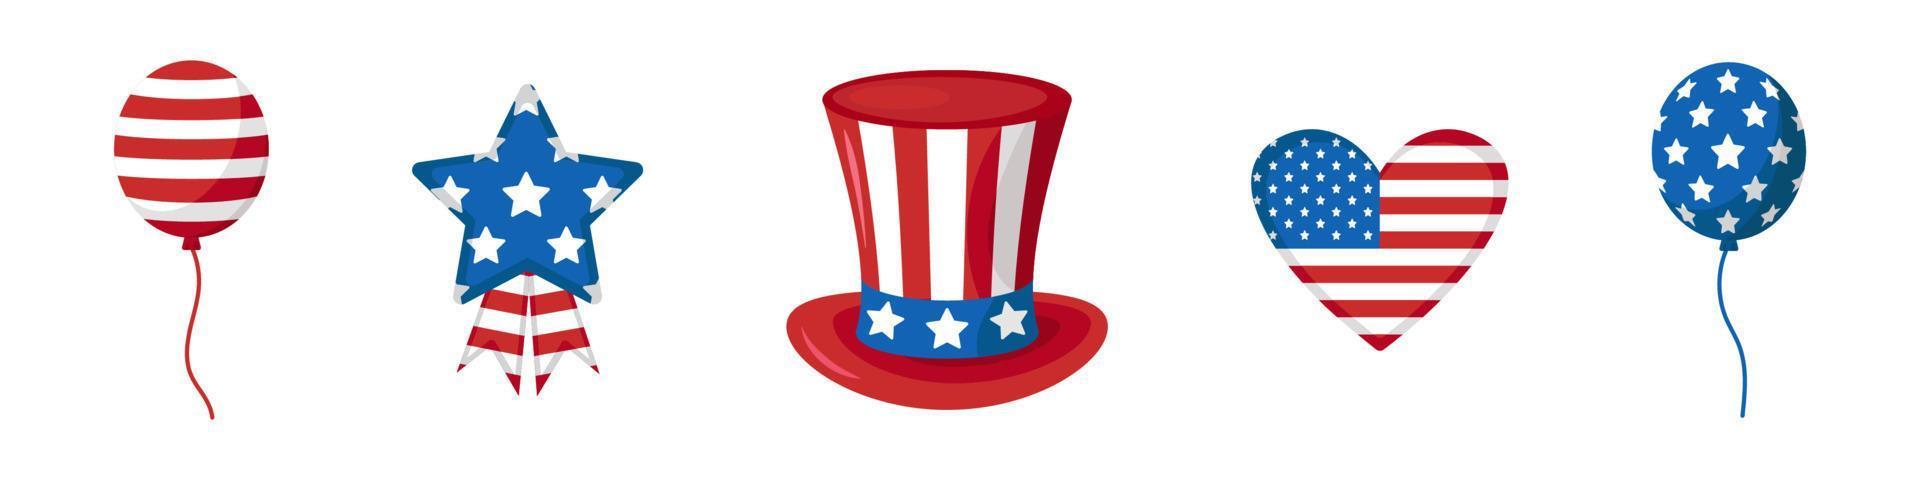 vetor definido para o dia da independência. bandeira americana. coleção com coração, estrela, chapéu e balões dos eua. celebração dos EUA. chapéu do tio sam. adesivos.